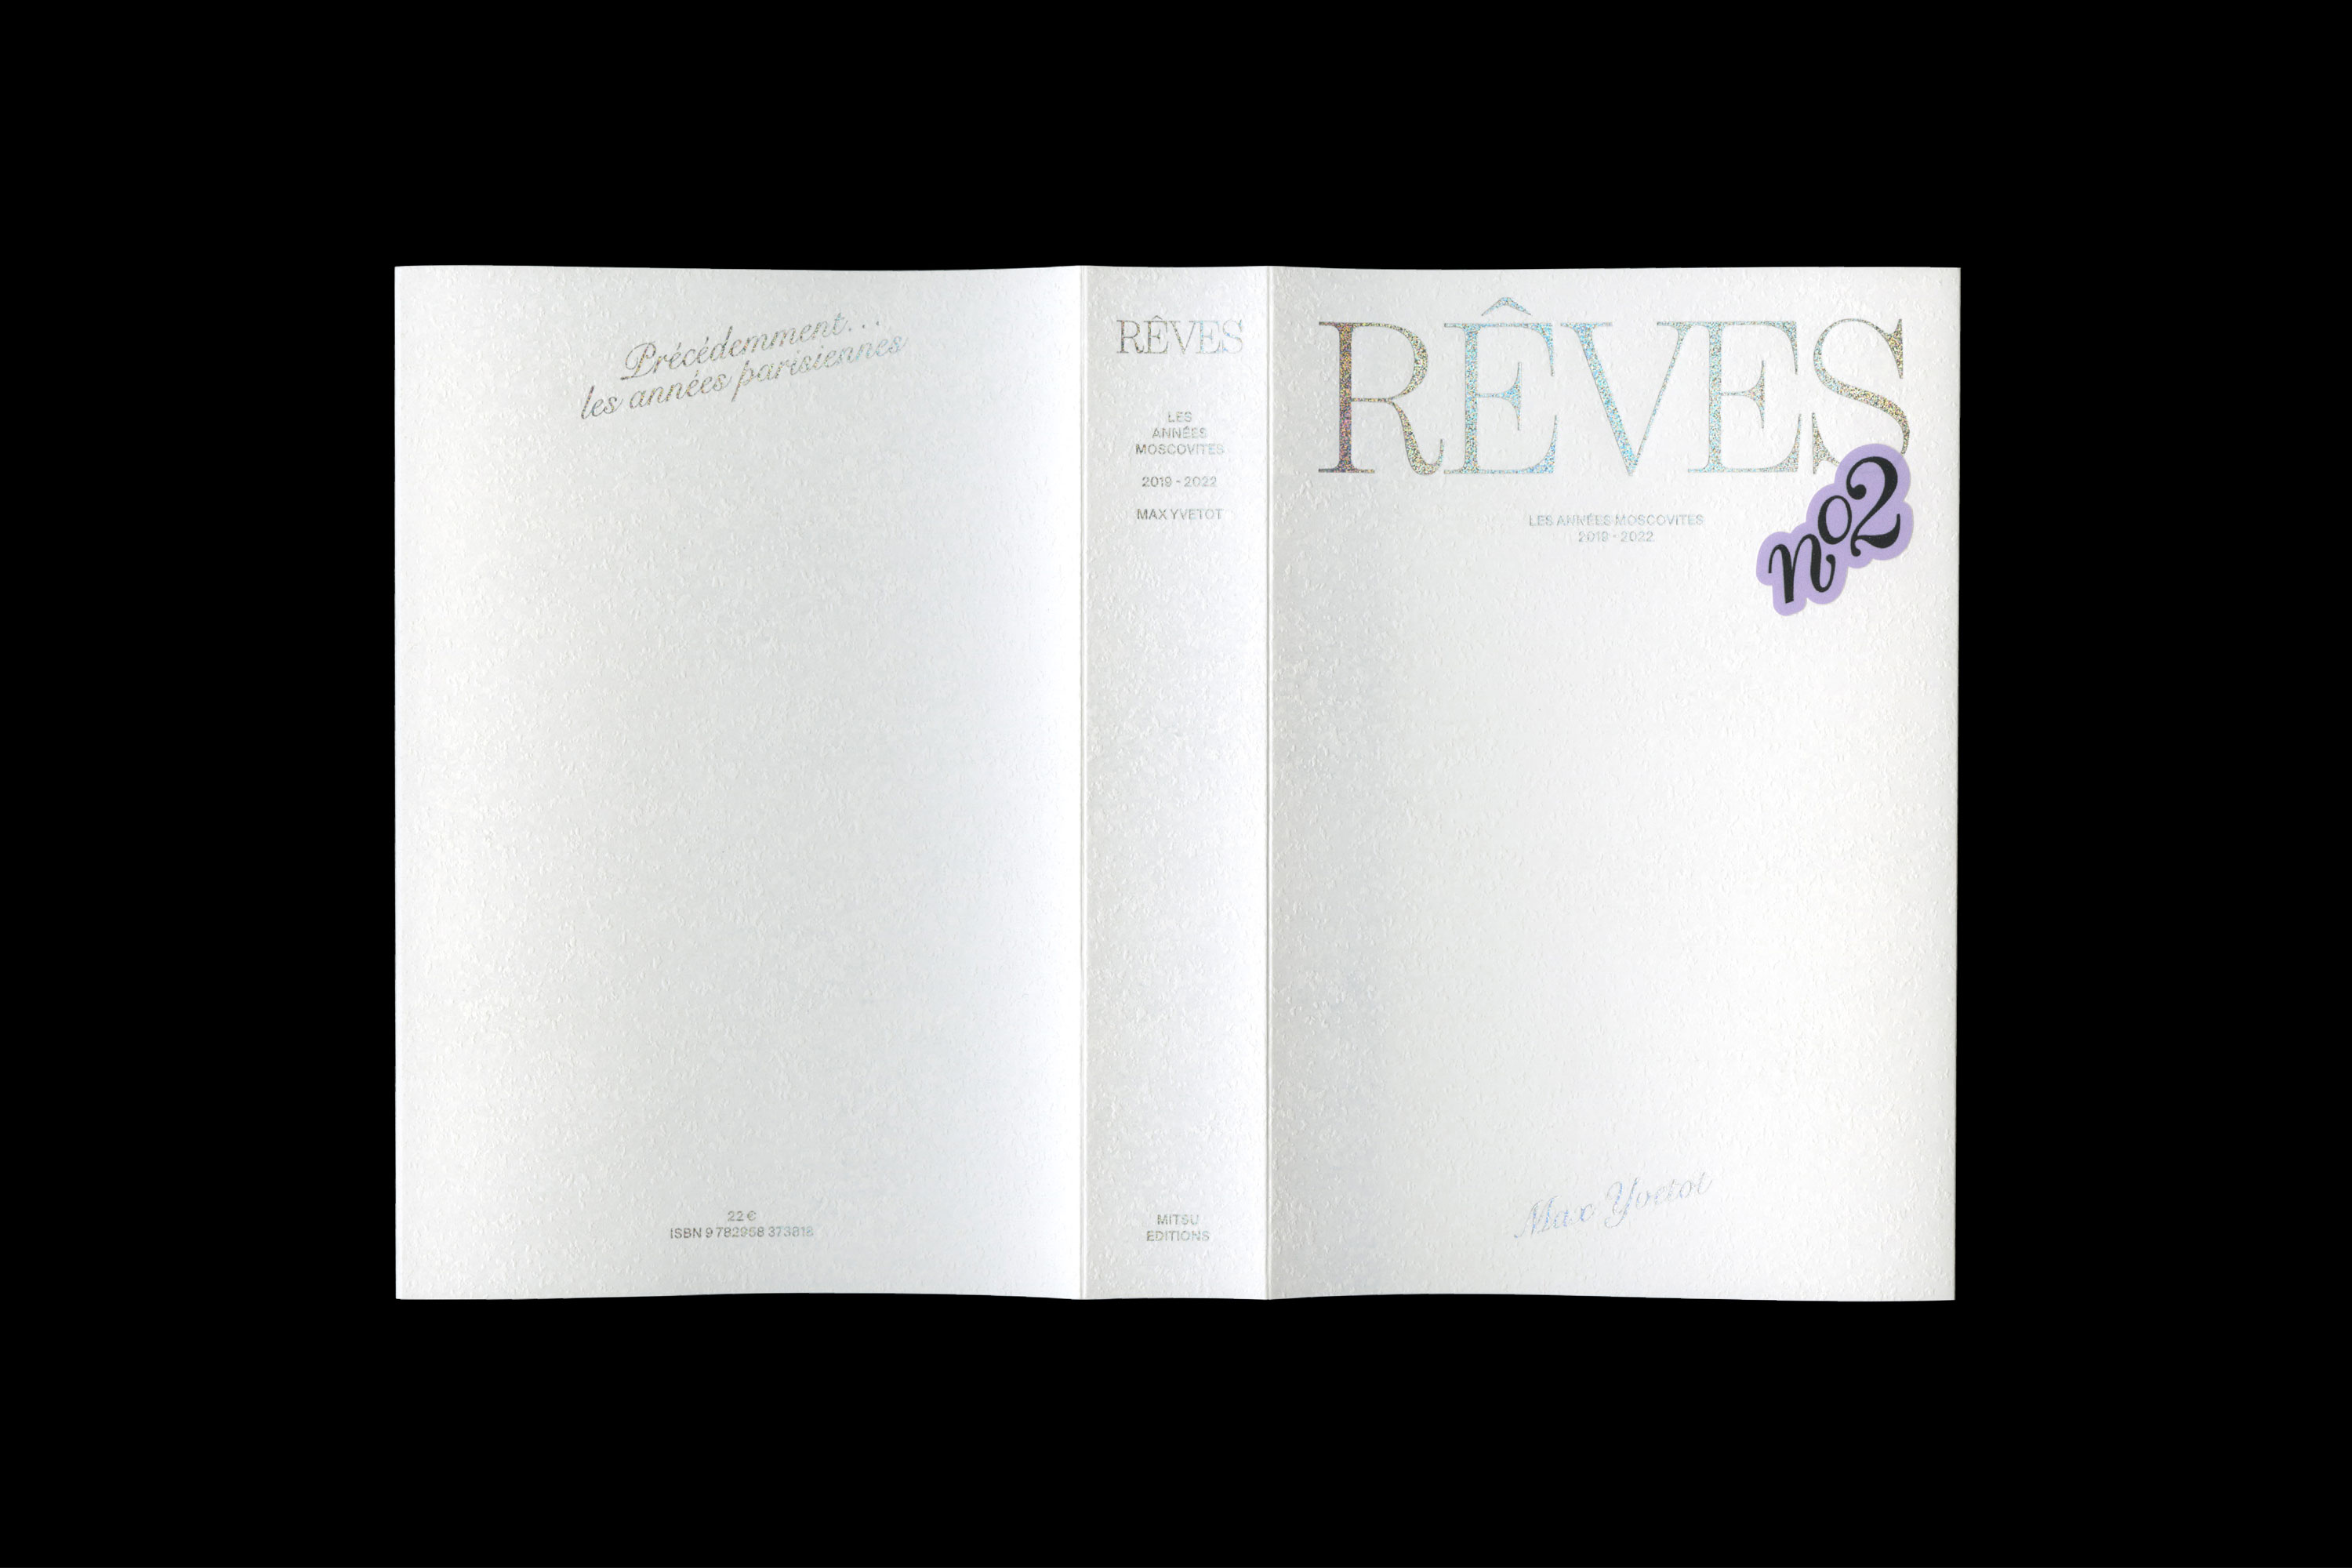 Rêves II - Les années Moscovites, 2019-2022
Max Yvetot 
Editions Mitsu